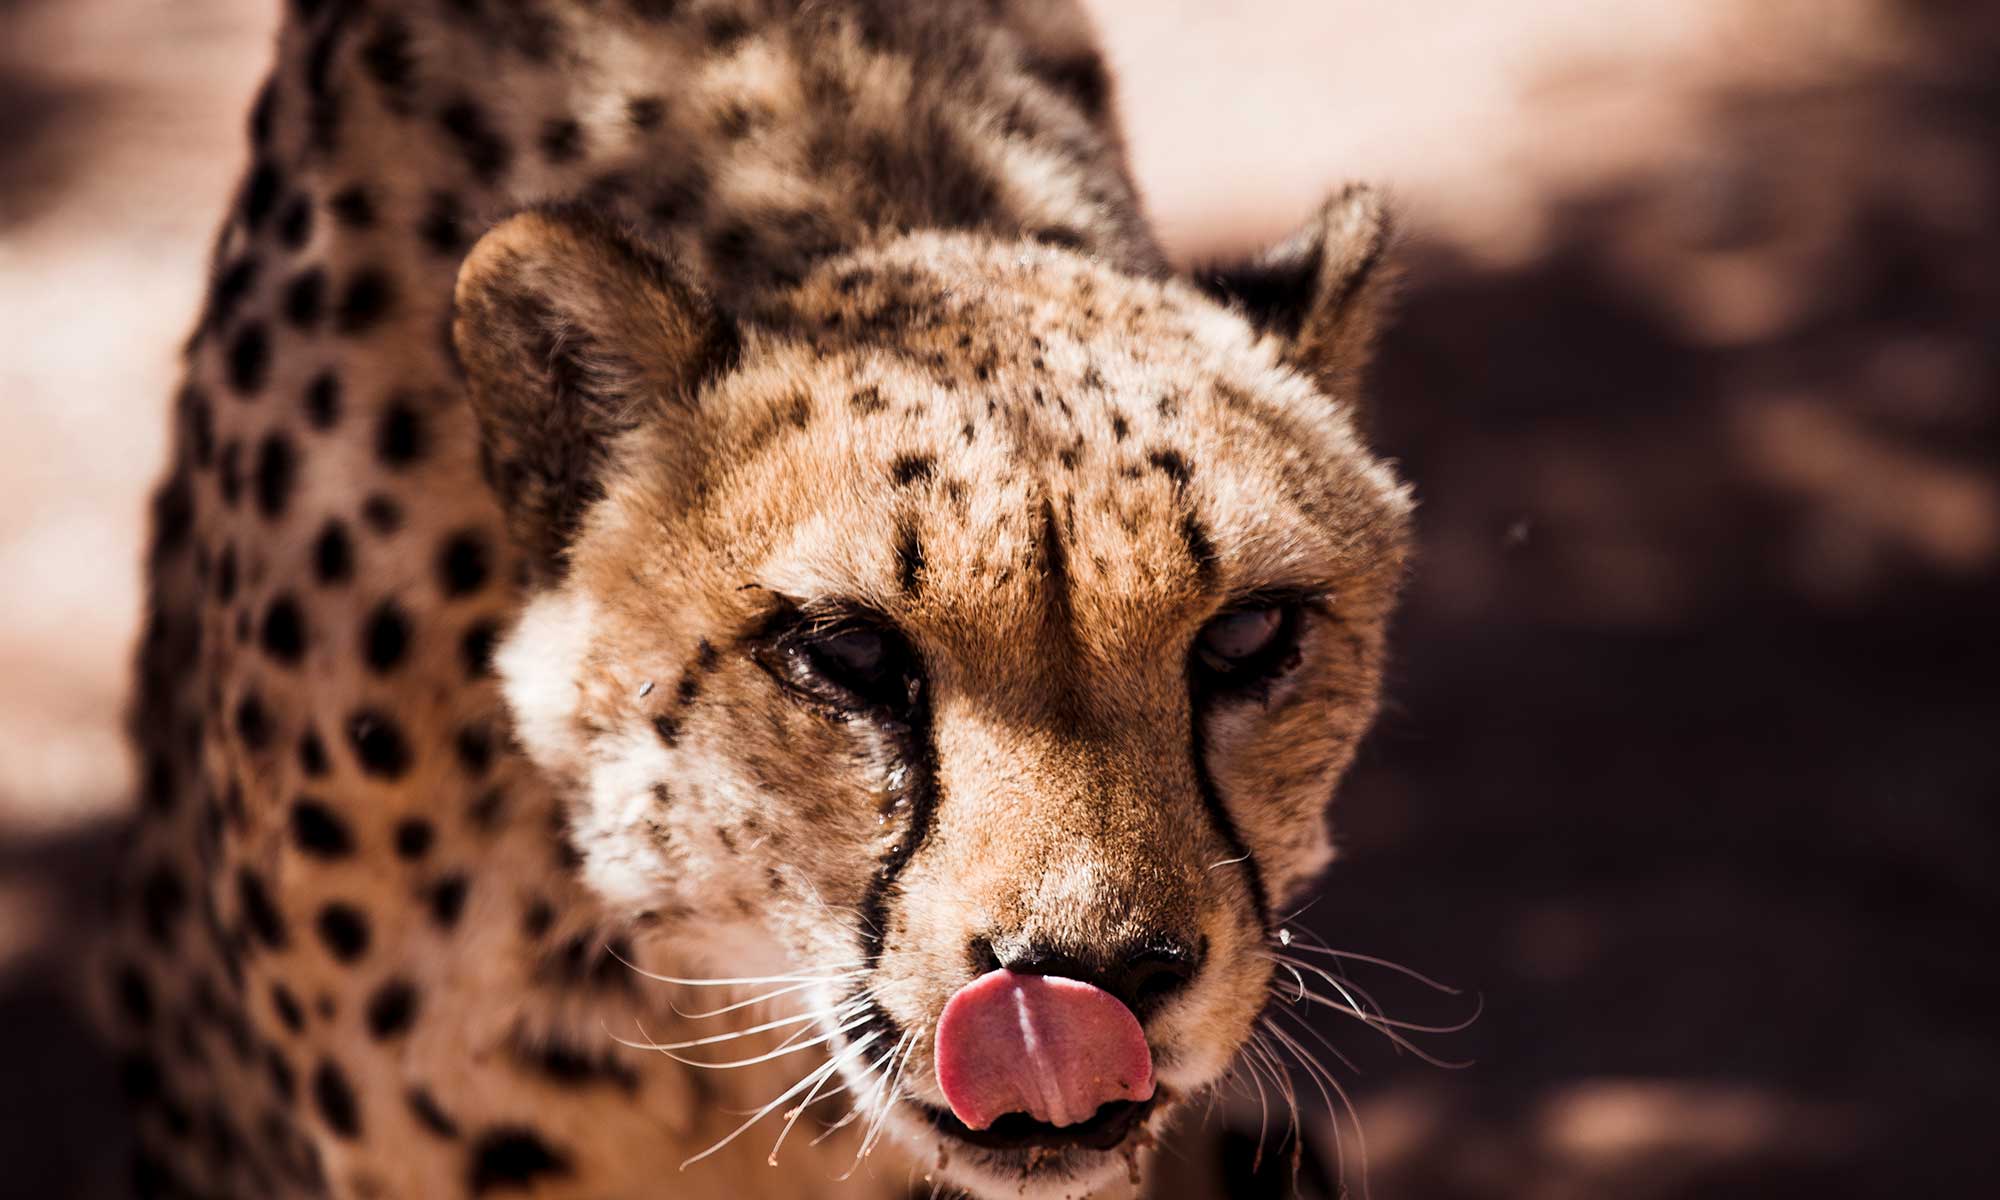 Ethical cheetah feeding in Namibia Wildlife Sanctuary 